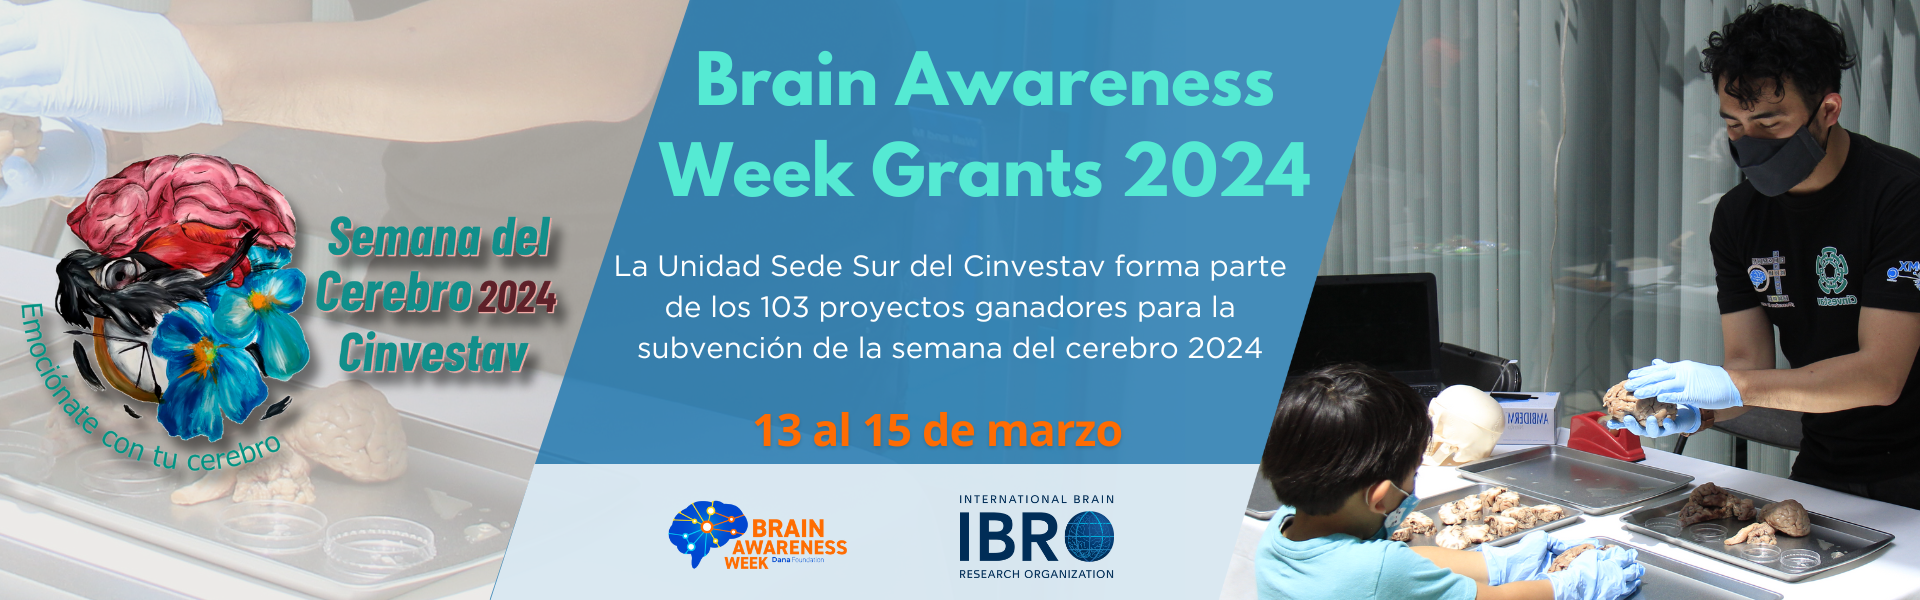 Brain Awareness Week Grants 2024